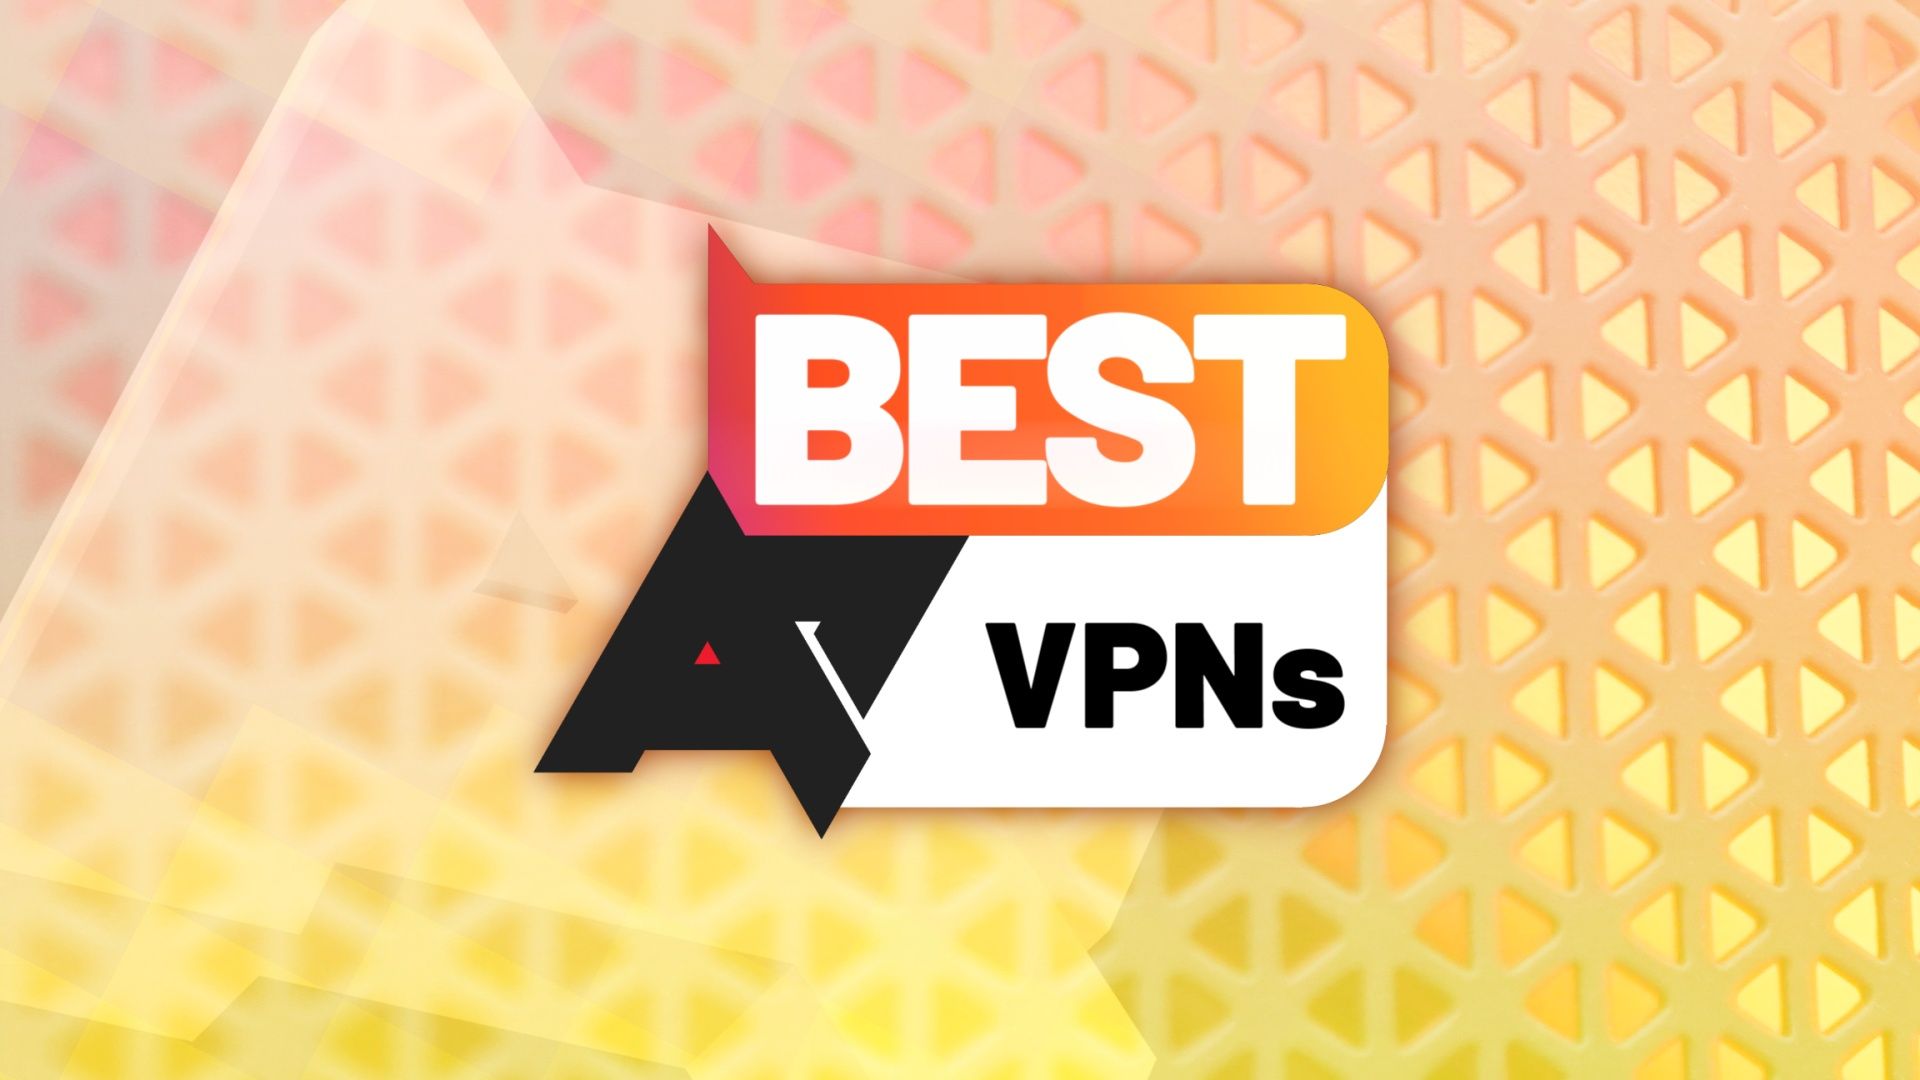 Logotipo 'Melhores VPNs' em frente a um fundo laranja texturizado